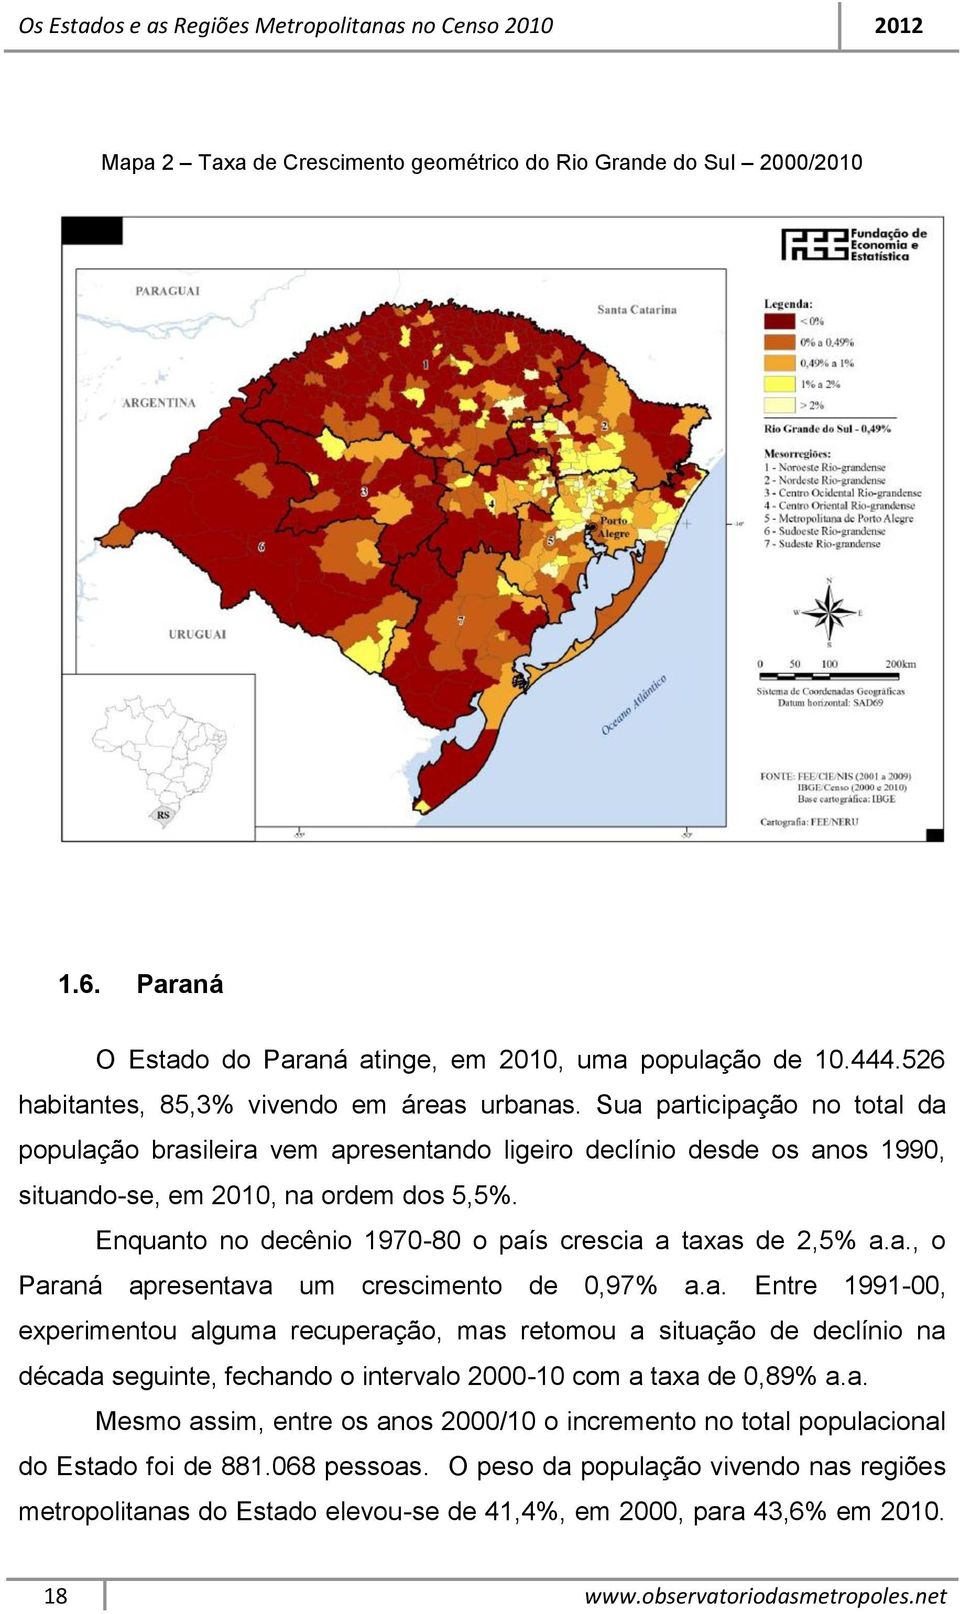 Enquanto no decênio 1970-80 o país crescia a taxas de 2,5% a.a., o Paraná apresentava um crescimento de 0,97% a.a. Entre 1991-00, experimentou alguma recuperação, mas retomou a situação de declínio na década seguinte, fechando o intervalo 2000-10 com a taxa de 0,89% a.